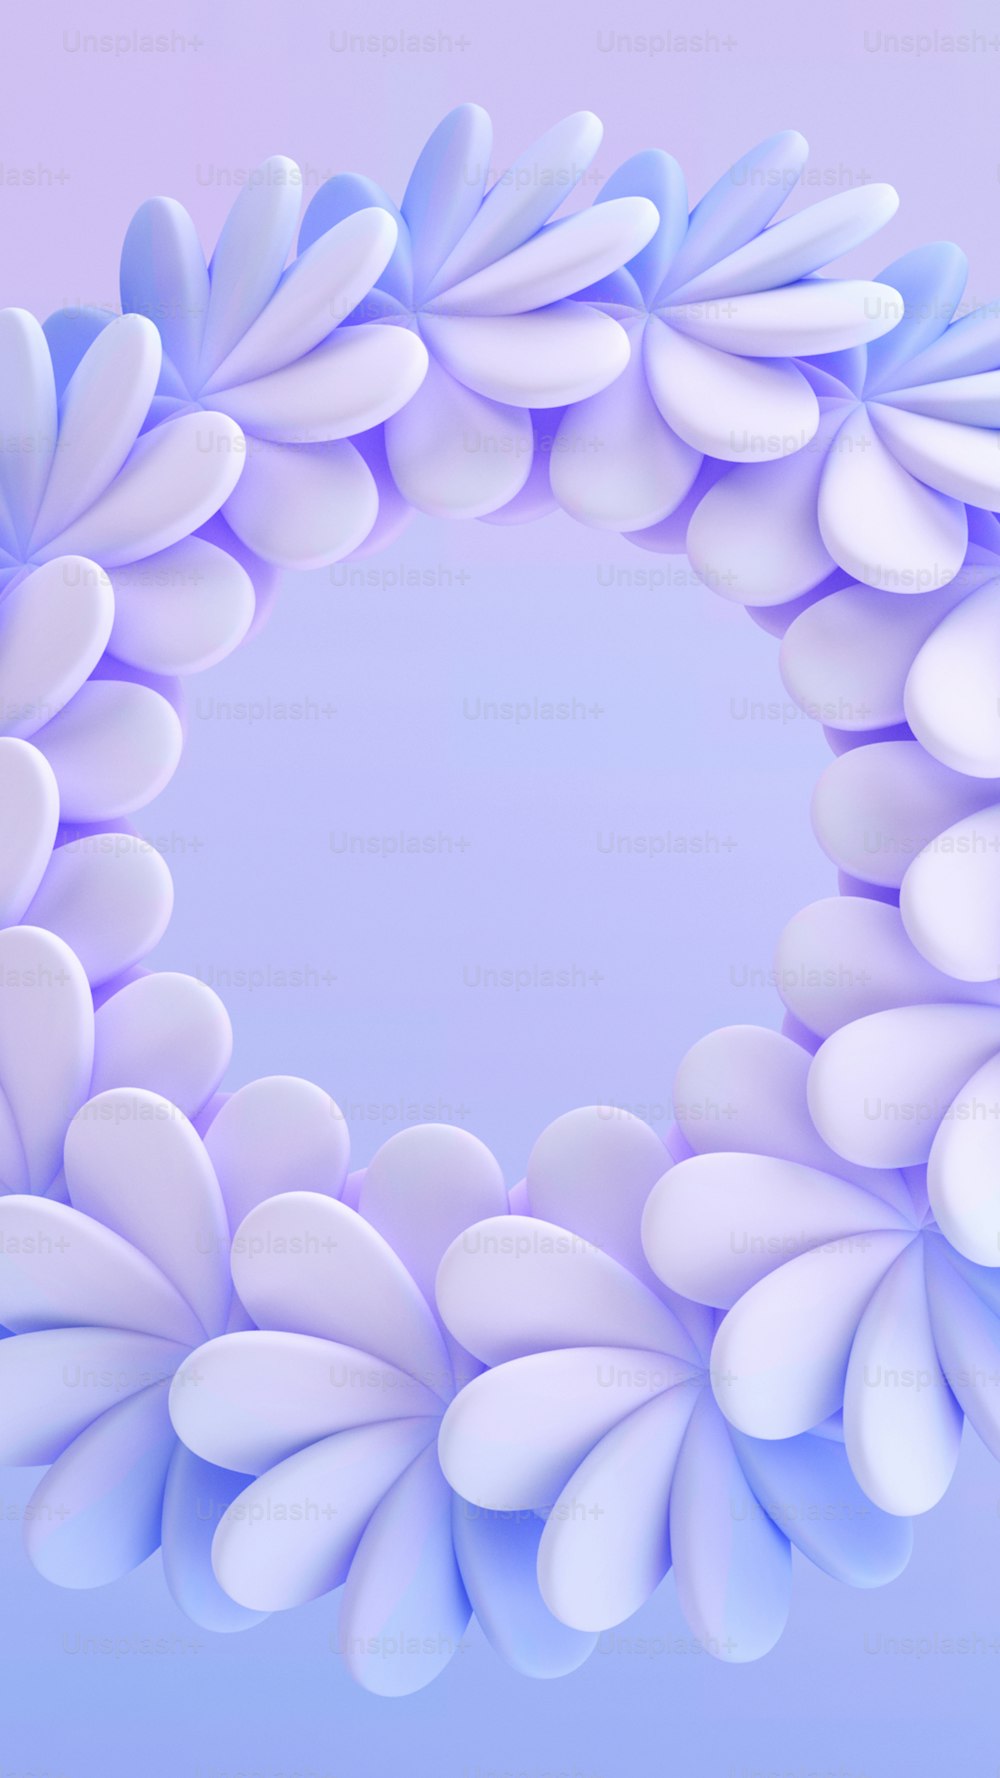 흰색 꽃잎이 있는 파란색과 흰색 원형 물체